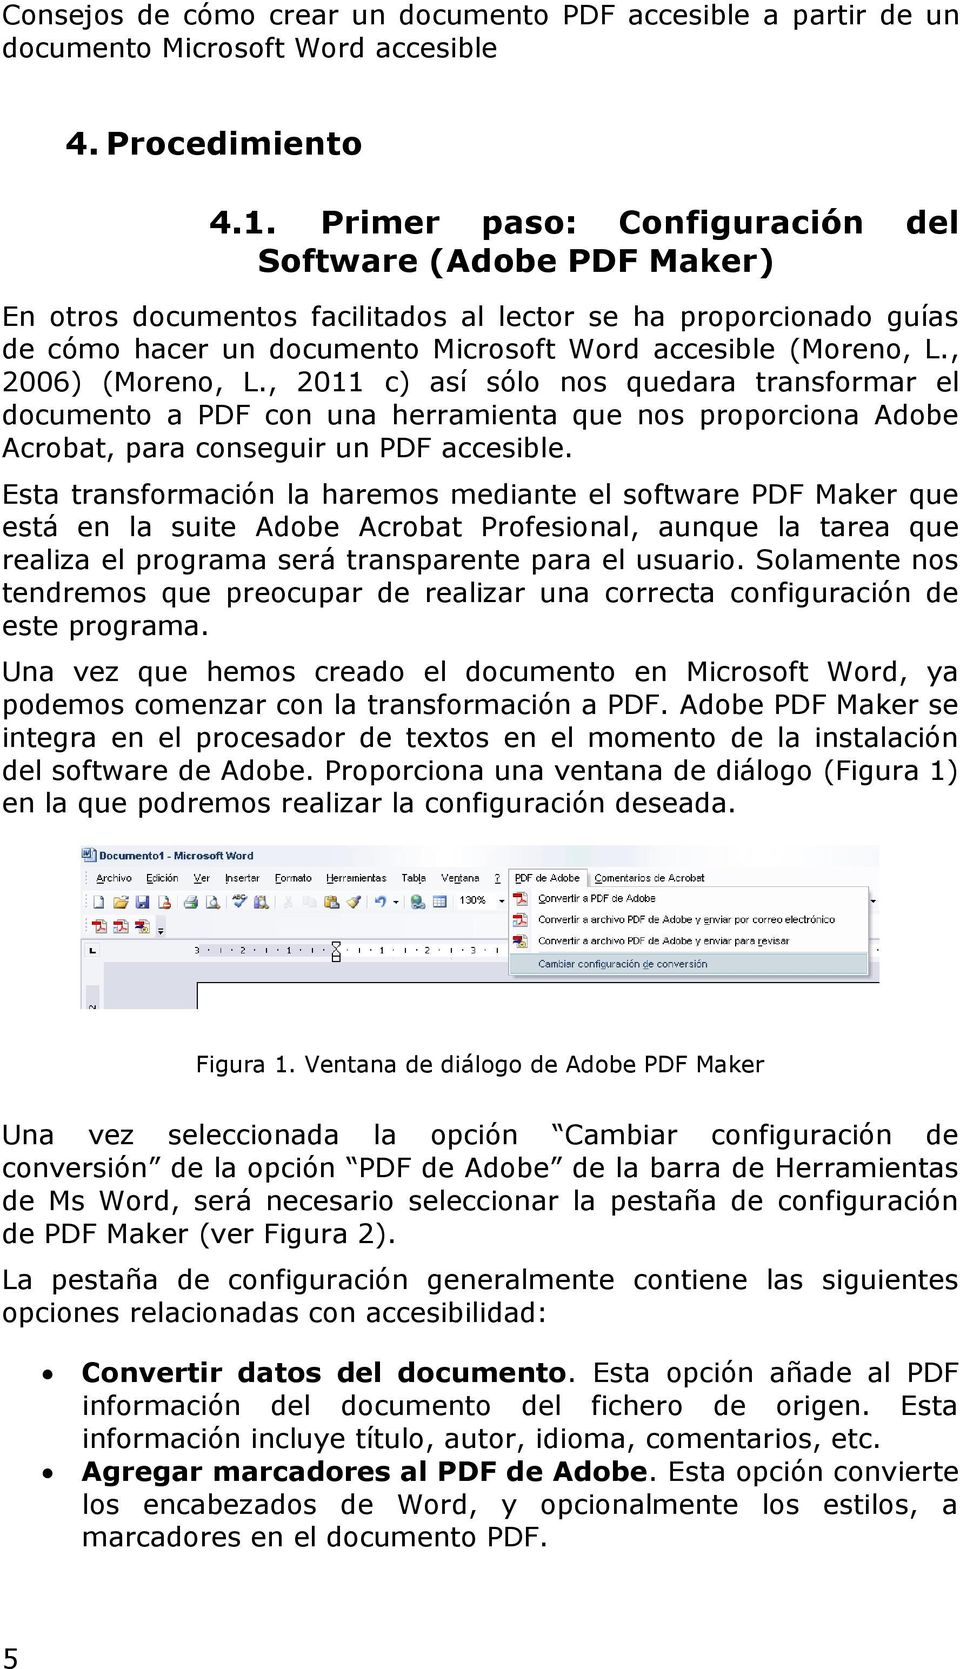 , 2006) (Moreno, L., 2011 c) así sólo nos quedara transformar el documento a PDF con una herramienta que nos proporciona Adobe Acrobat, para conseguir un PDF accesible.